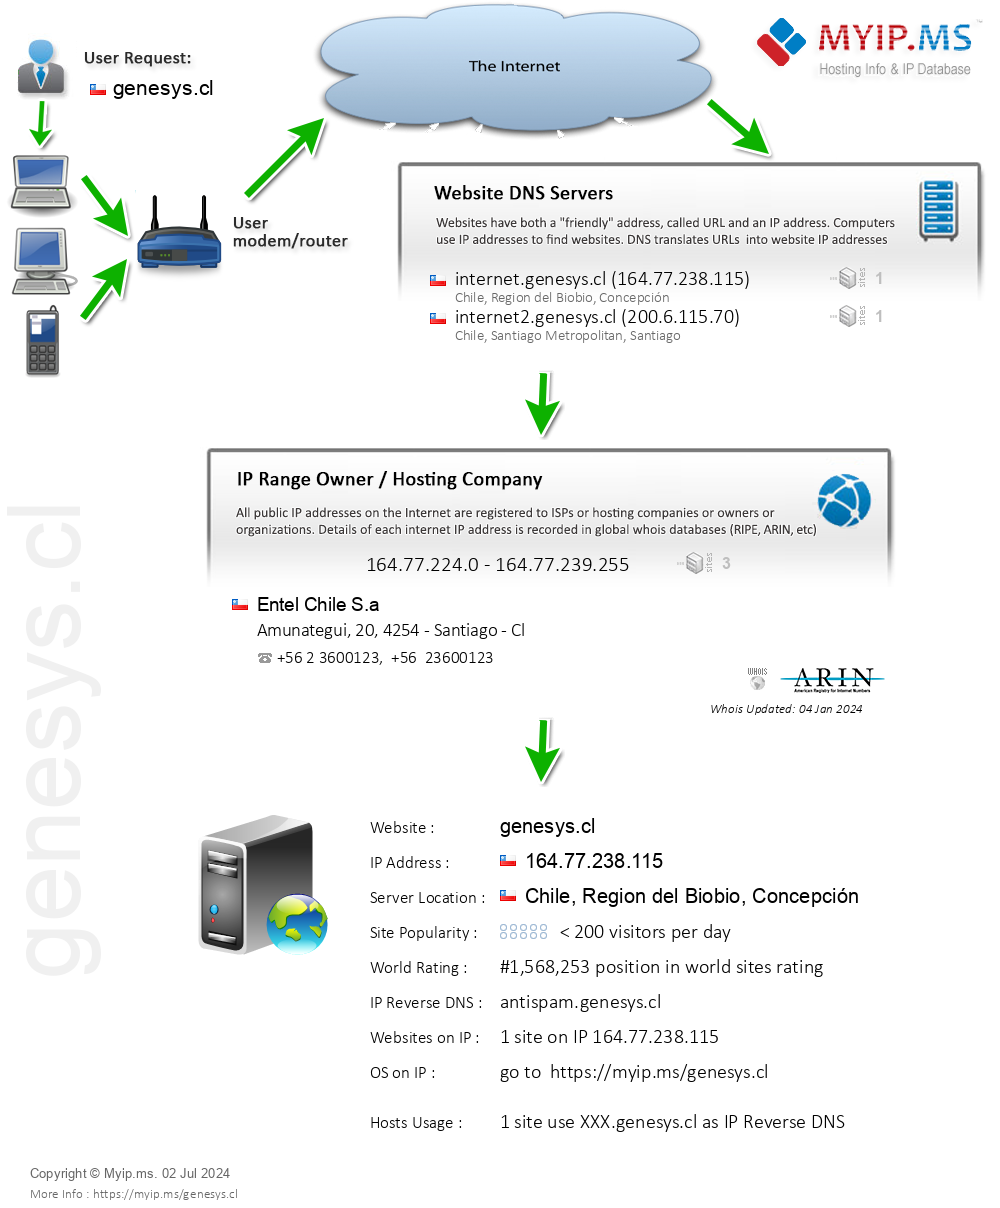 Genesys.cl - Website Hosting Visual IP Diagram